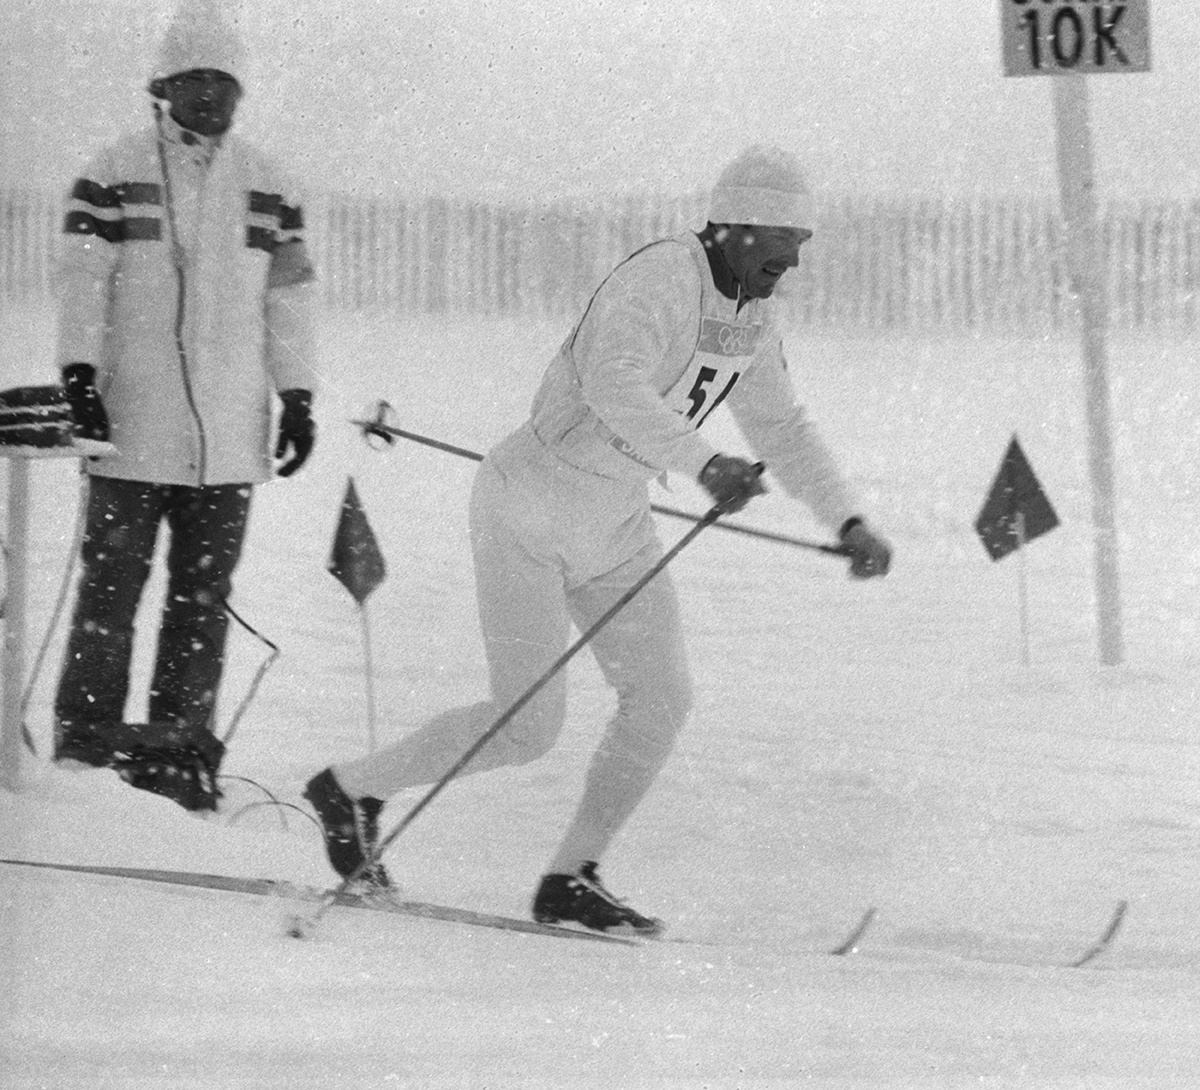 Япония. Саппоро. 4 февраля 1972 г. Советский лыжник Вячеслав Петрович Веденин, завоевавший золотую медаль в лыжной гонке на 30 километров с результатом 1 час 26 минут 31,15 секунды, на дистанции во время XI зимних Олимпийских игр. 